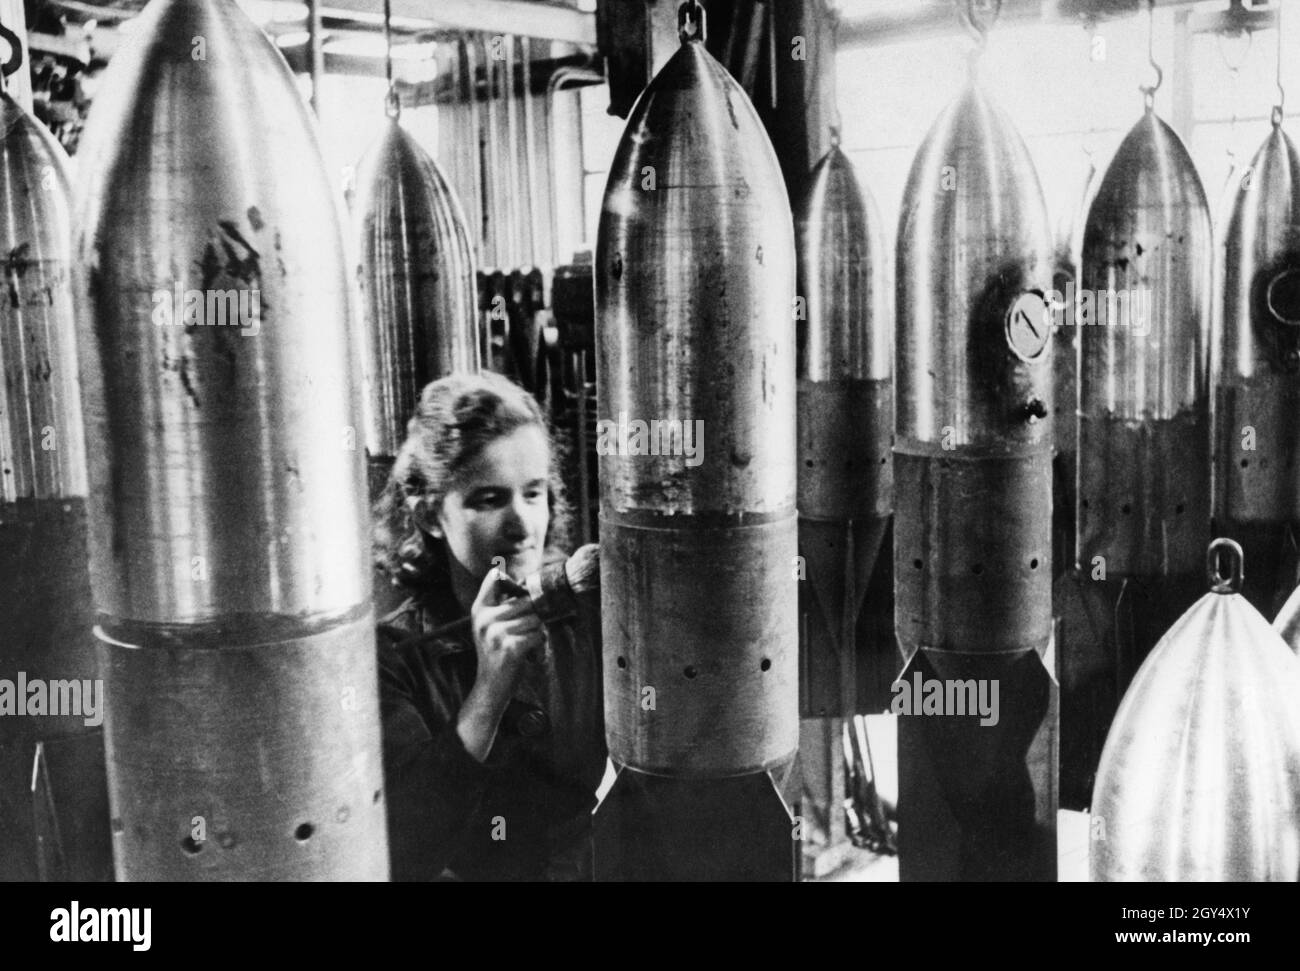 Industria degli armamenti nella seconda guerra mondiale: Un operaio mette numeri di tipo sulle bombe aeree finite. [traduzione automatizzata] Foto Stock